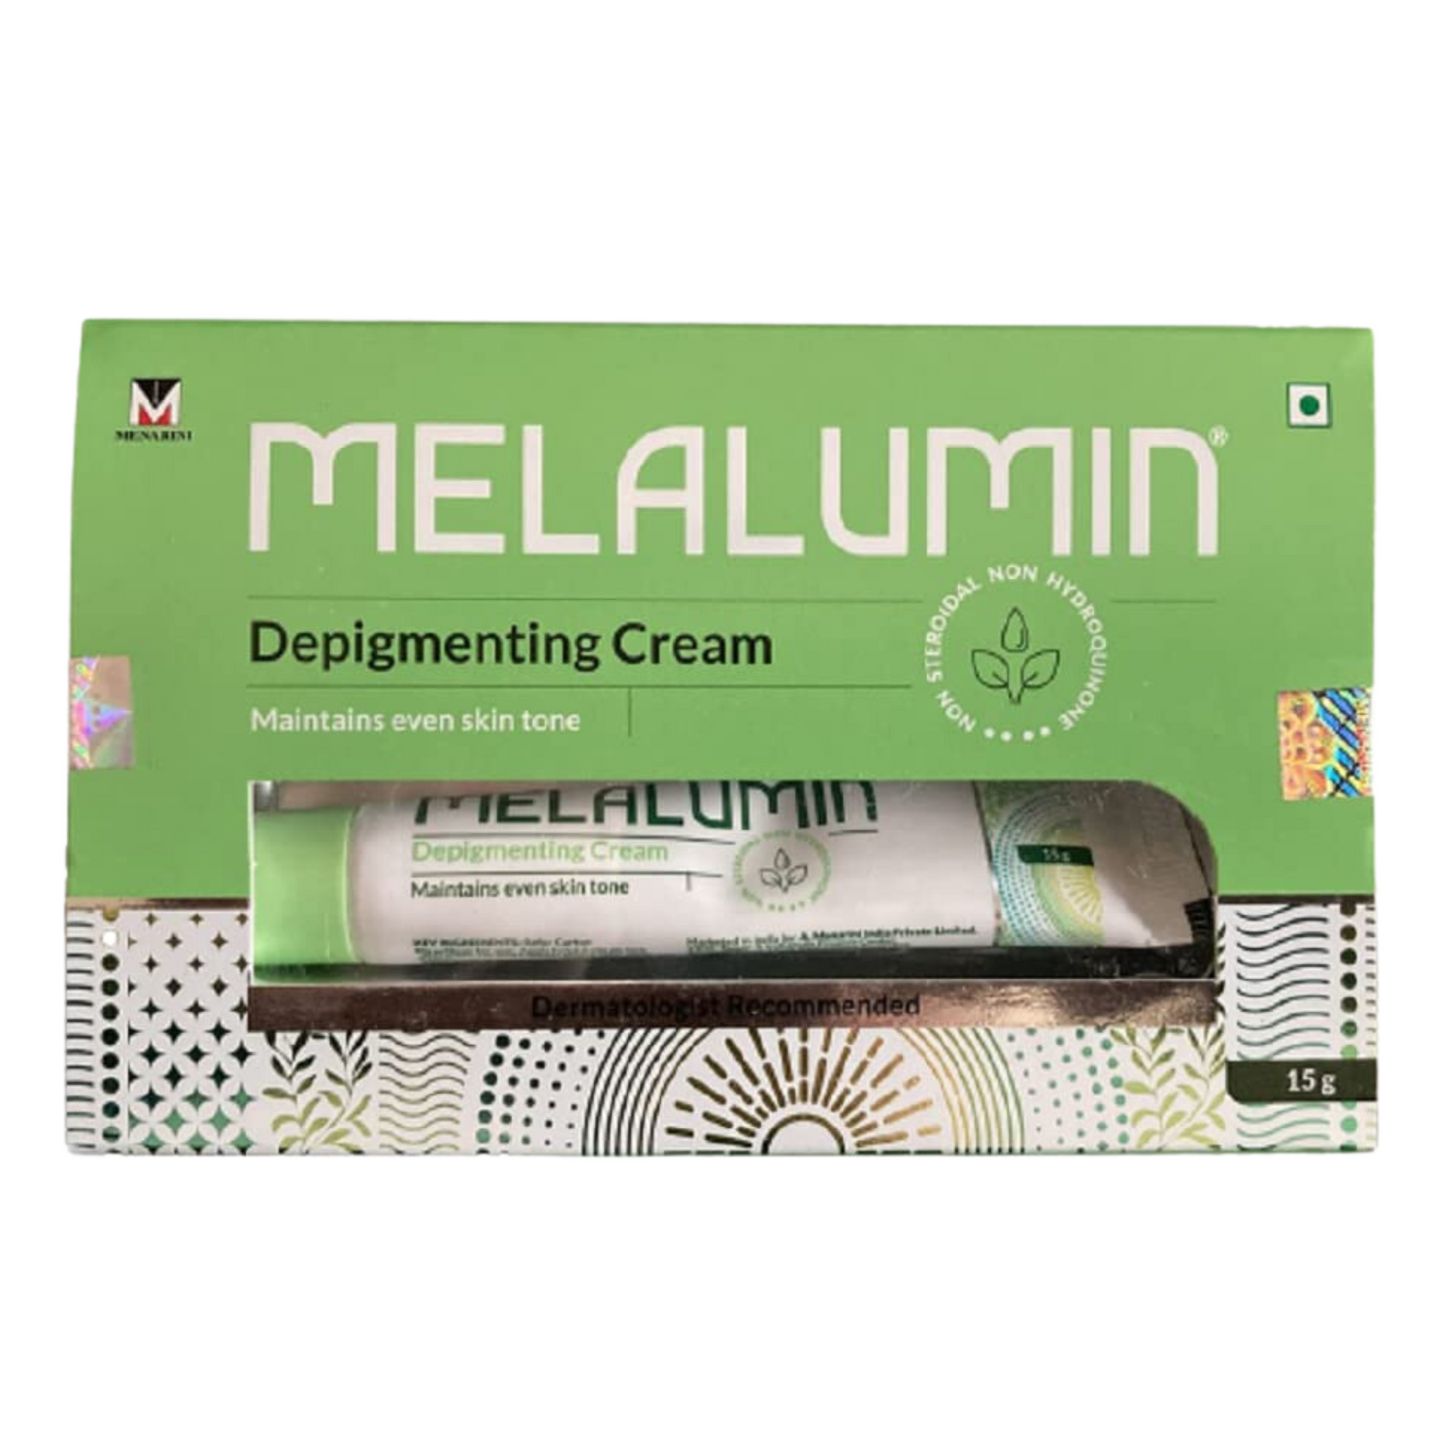 Melalumin Depigmenting Cream, 15gm